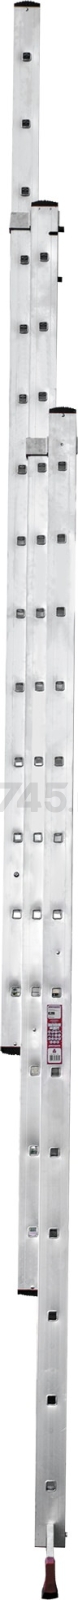 Лестница алюминиевая трехсекционная 926 см НОВАЯ ВЫСОТА NV323 (3230314) - Фото 9